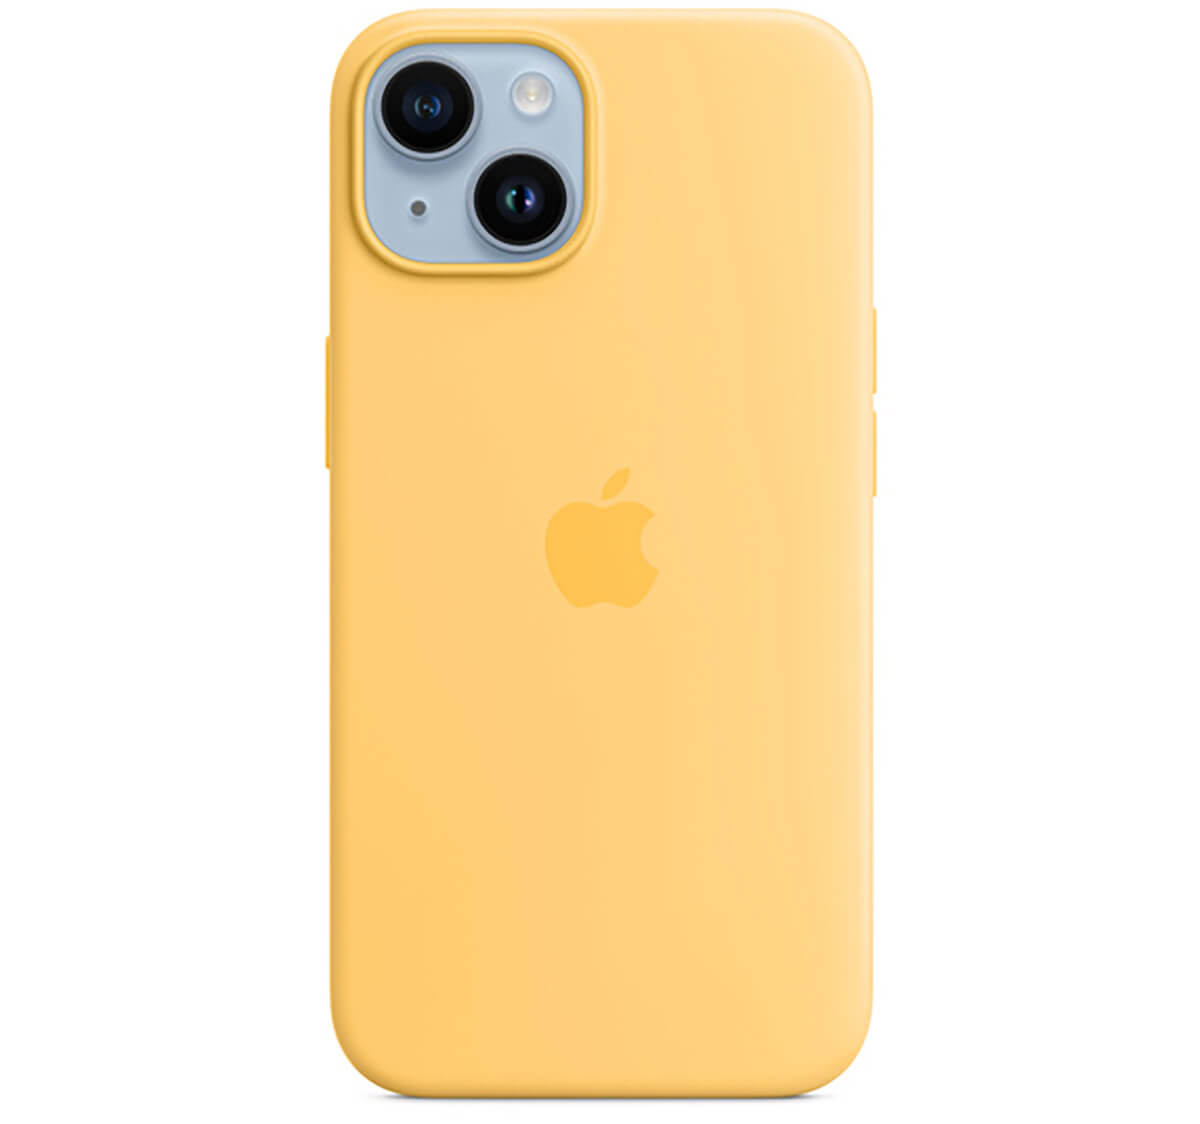 既存のiPhoneカバーの黄色